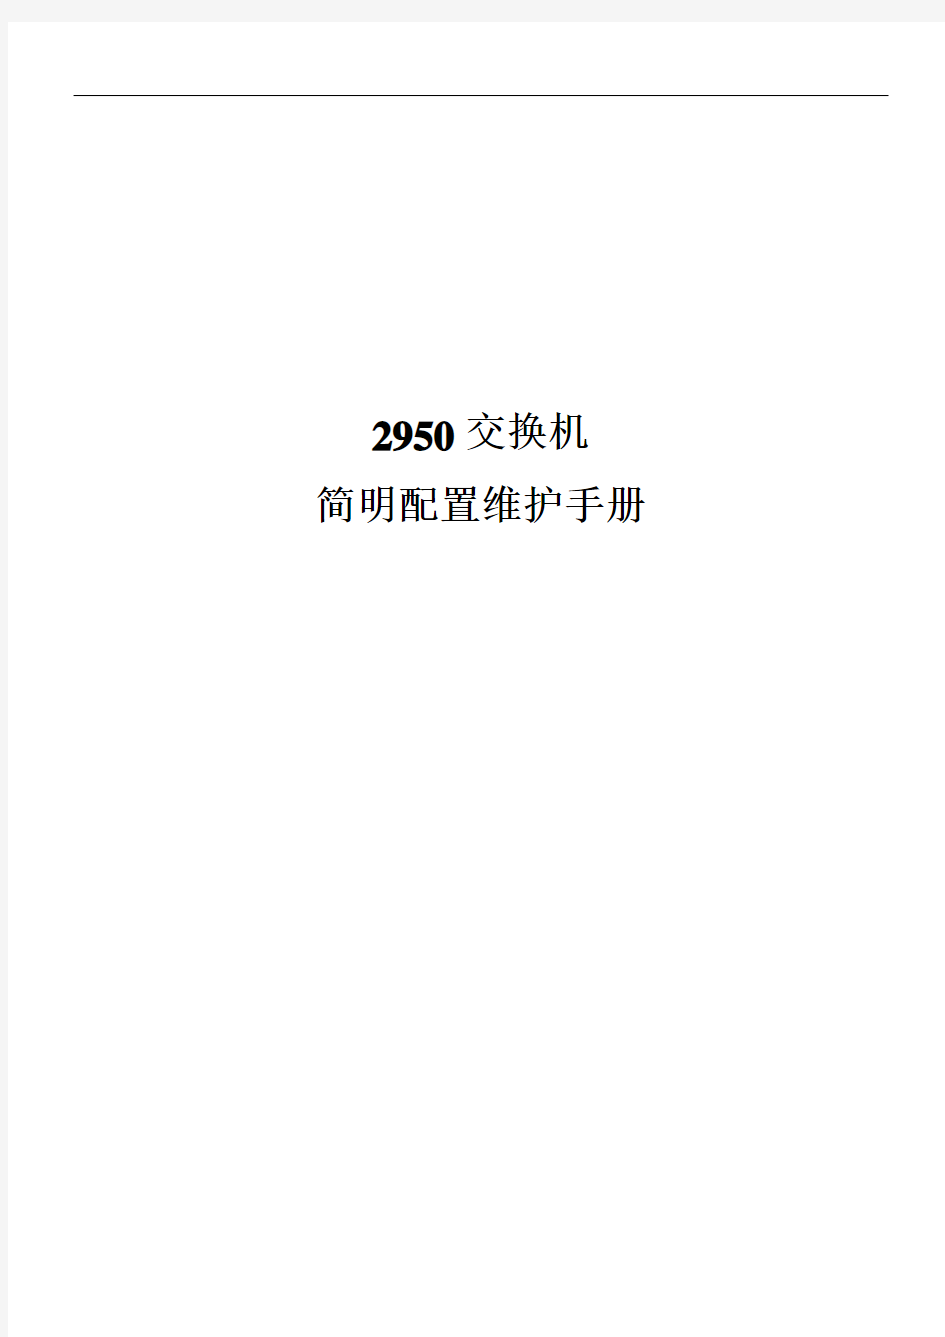 思科cisco2950交换机配置手册(中文)